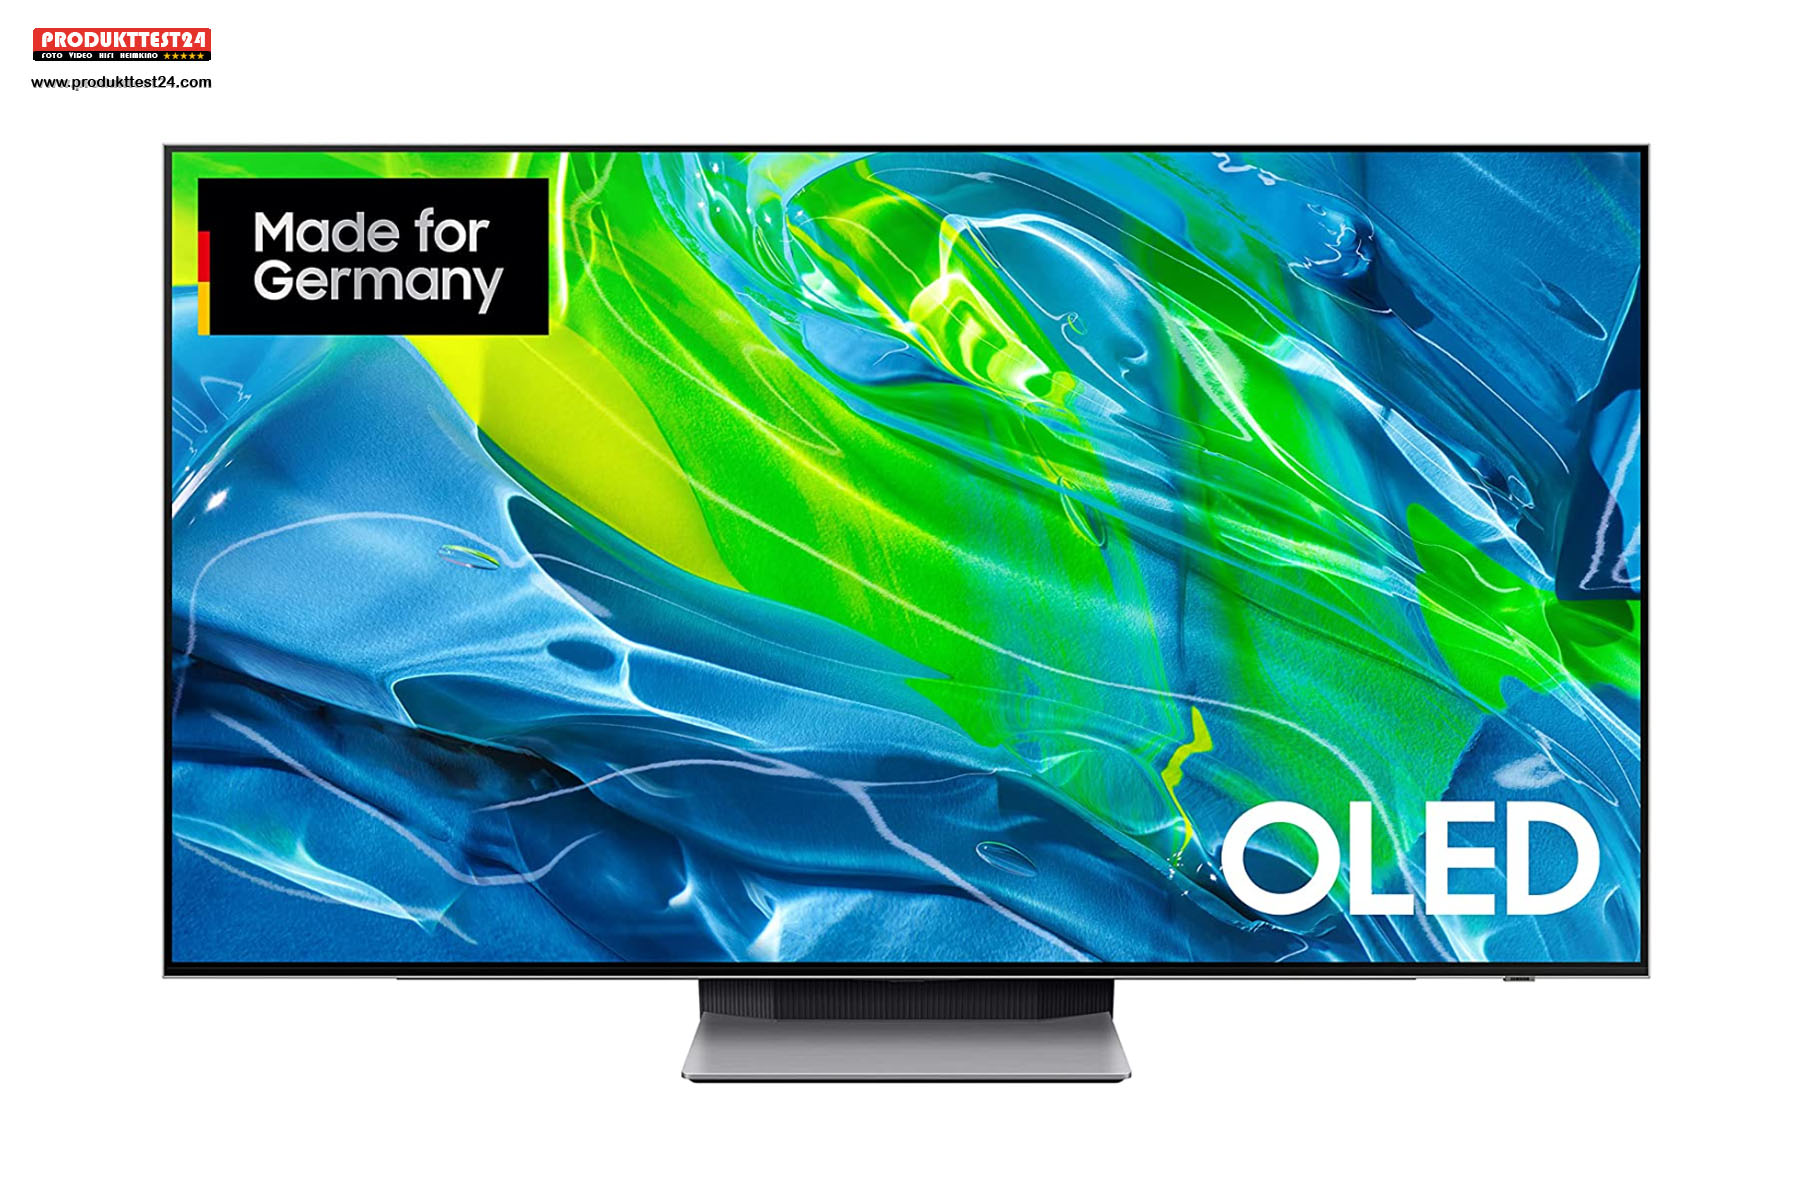 Der Samsung QD-OLED Fernseher mit 65 Zoll Bilddiagonale